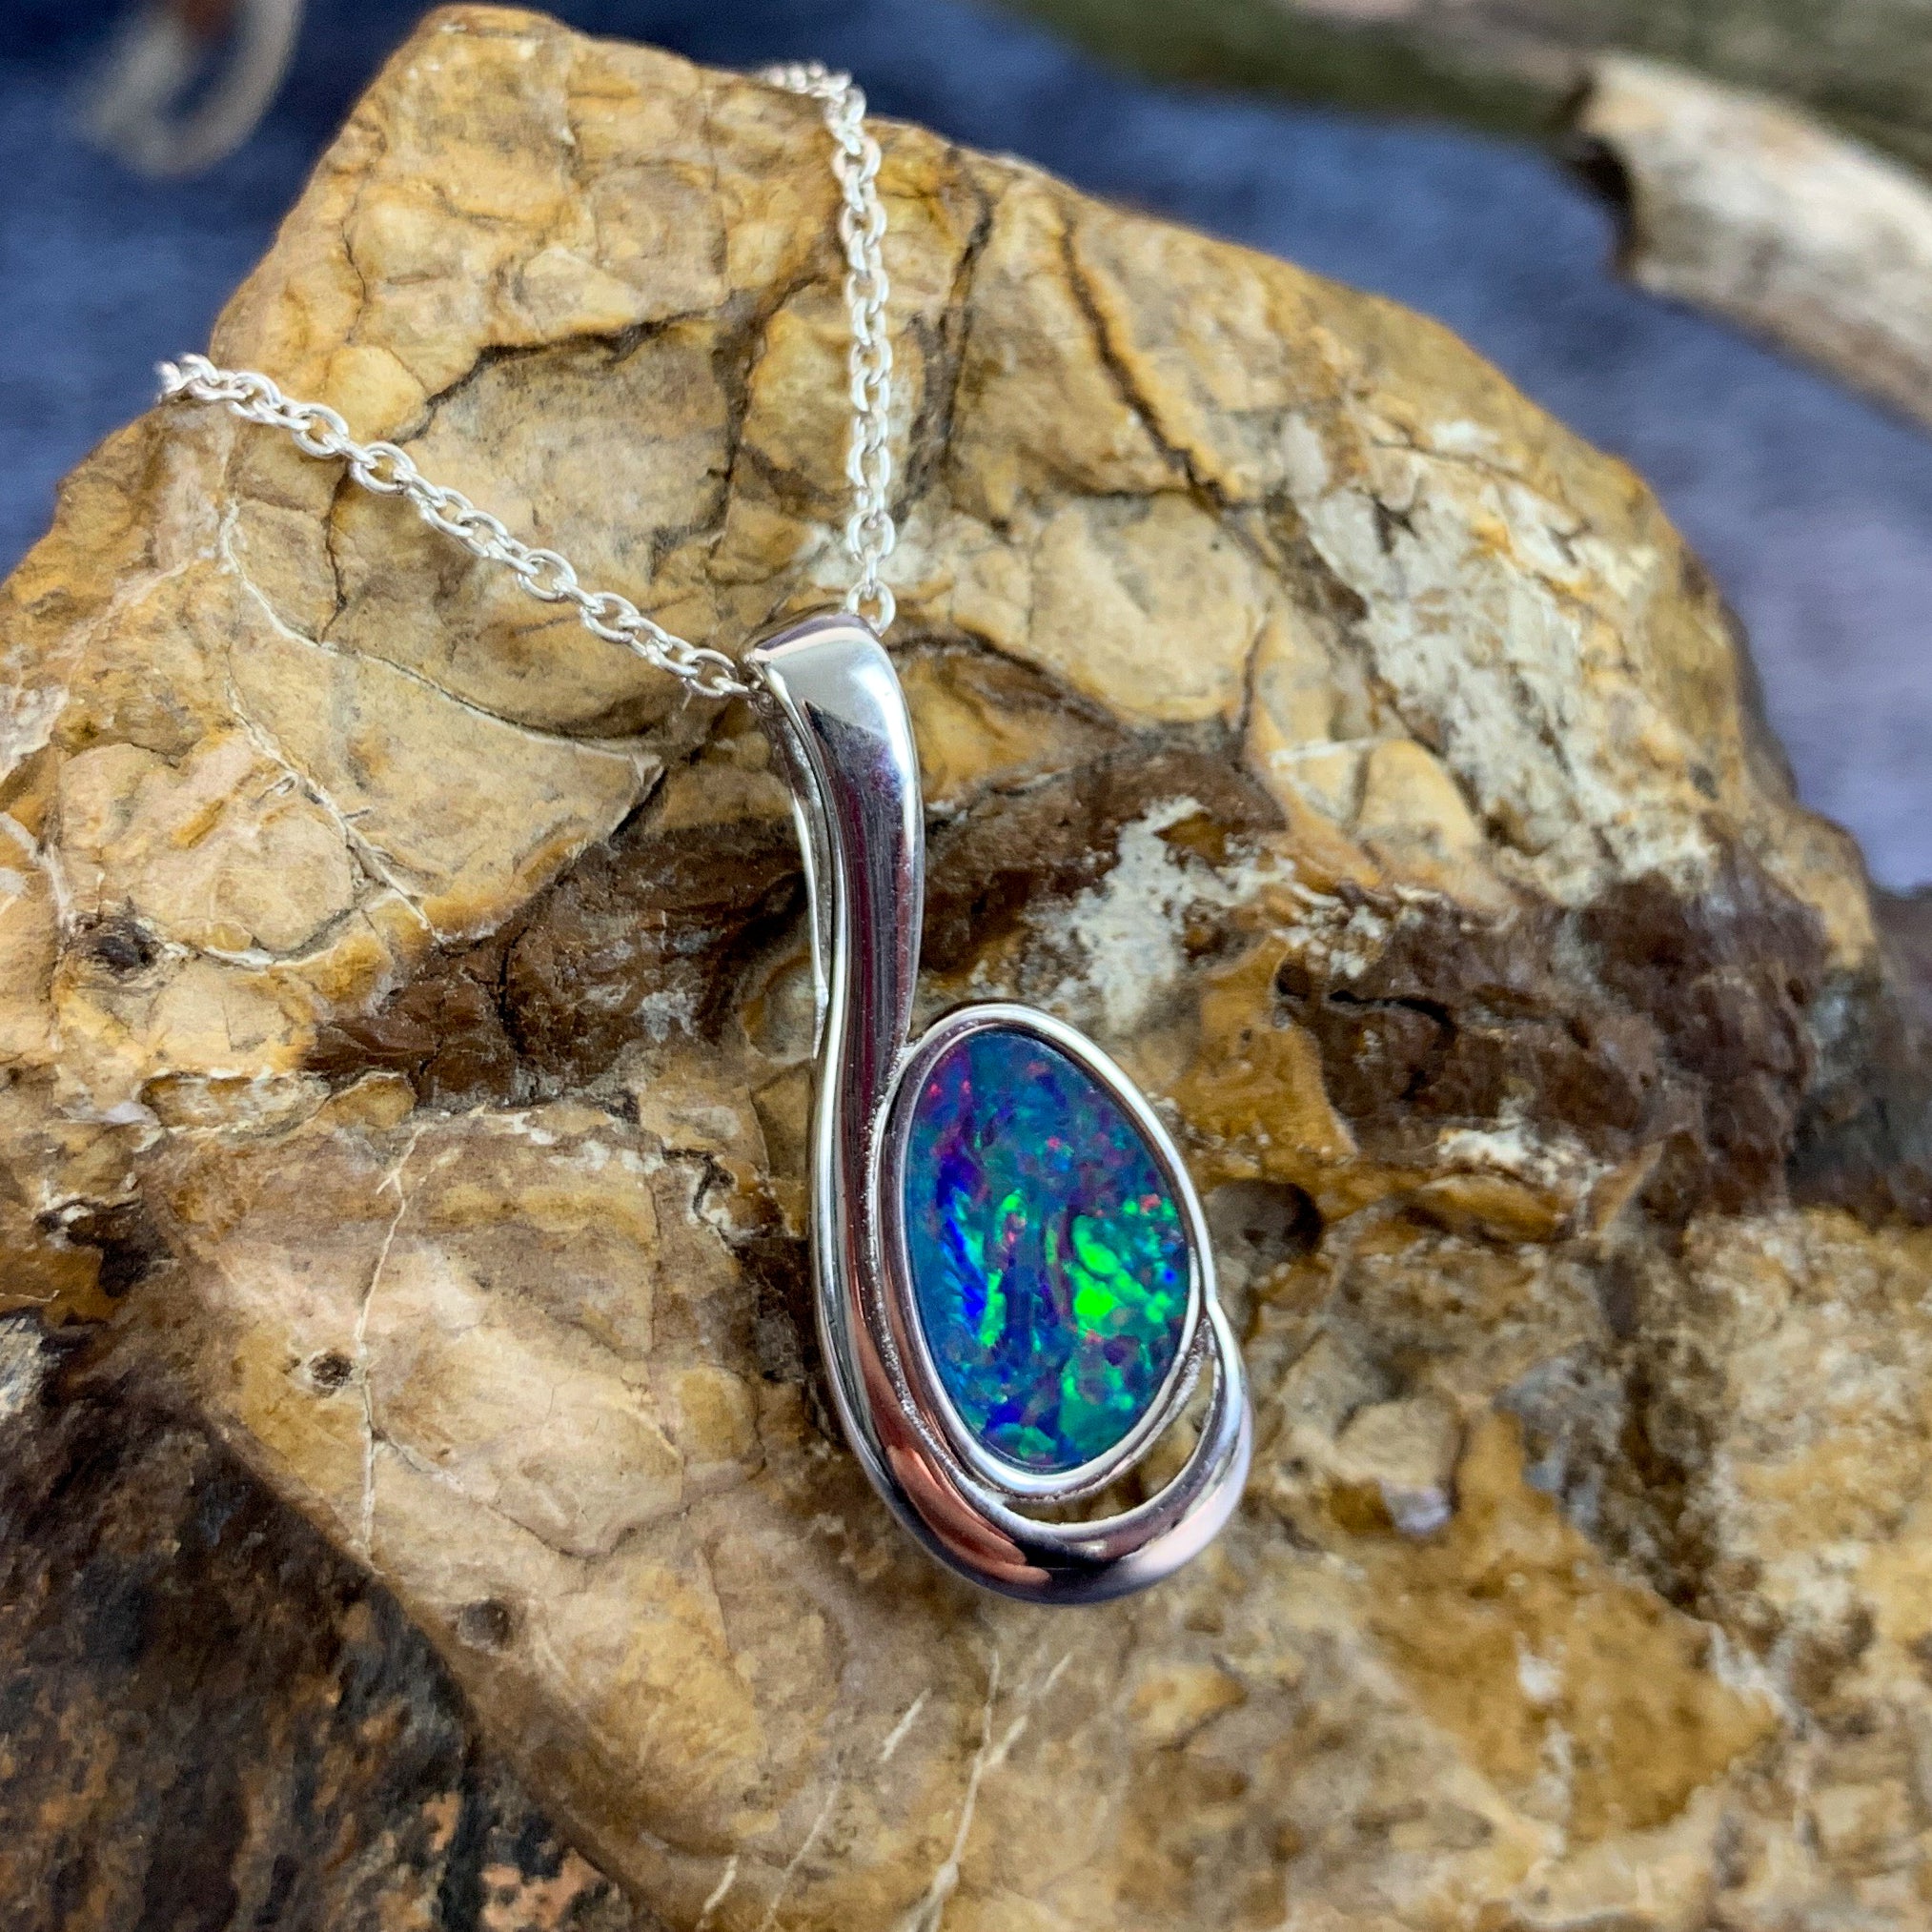 Sterling Silver Opal doublet 27x11mm pendant - Masterpiece Jewellery Opal & Gems Sydney Australia | Online Shop